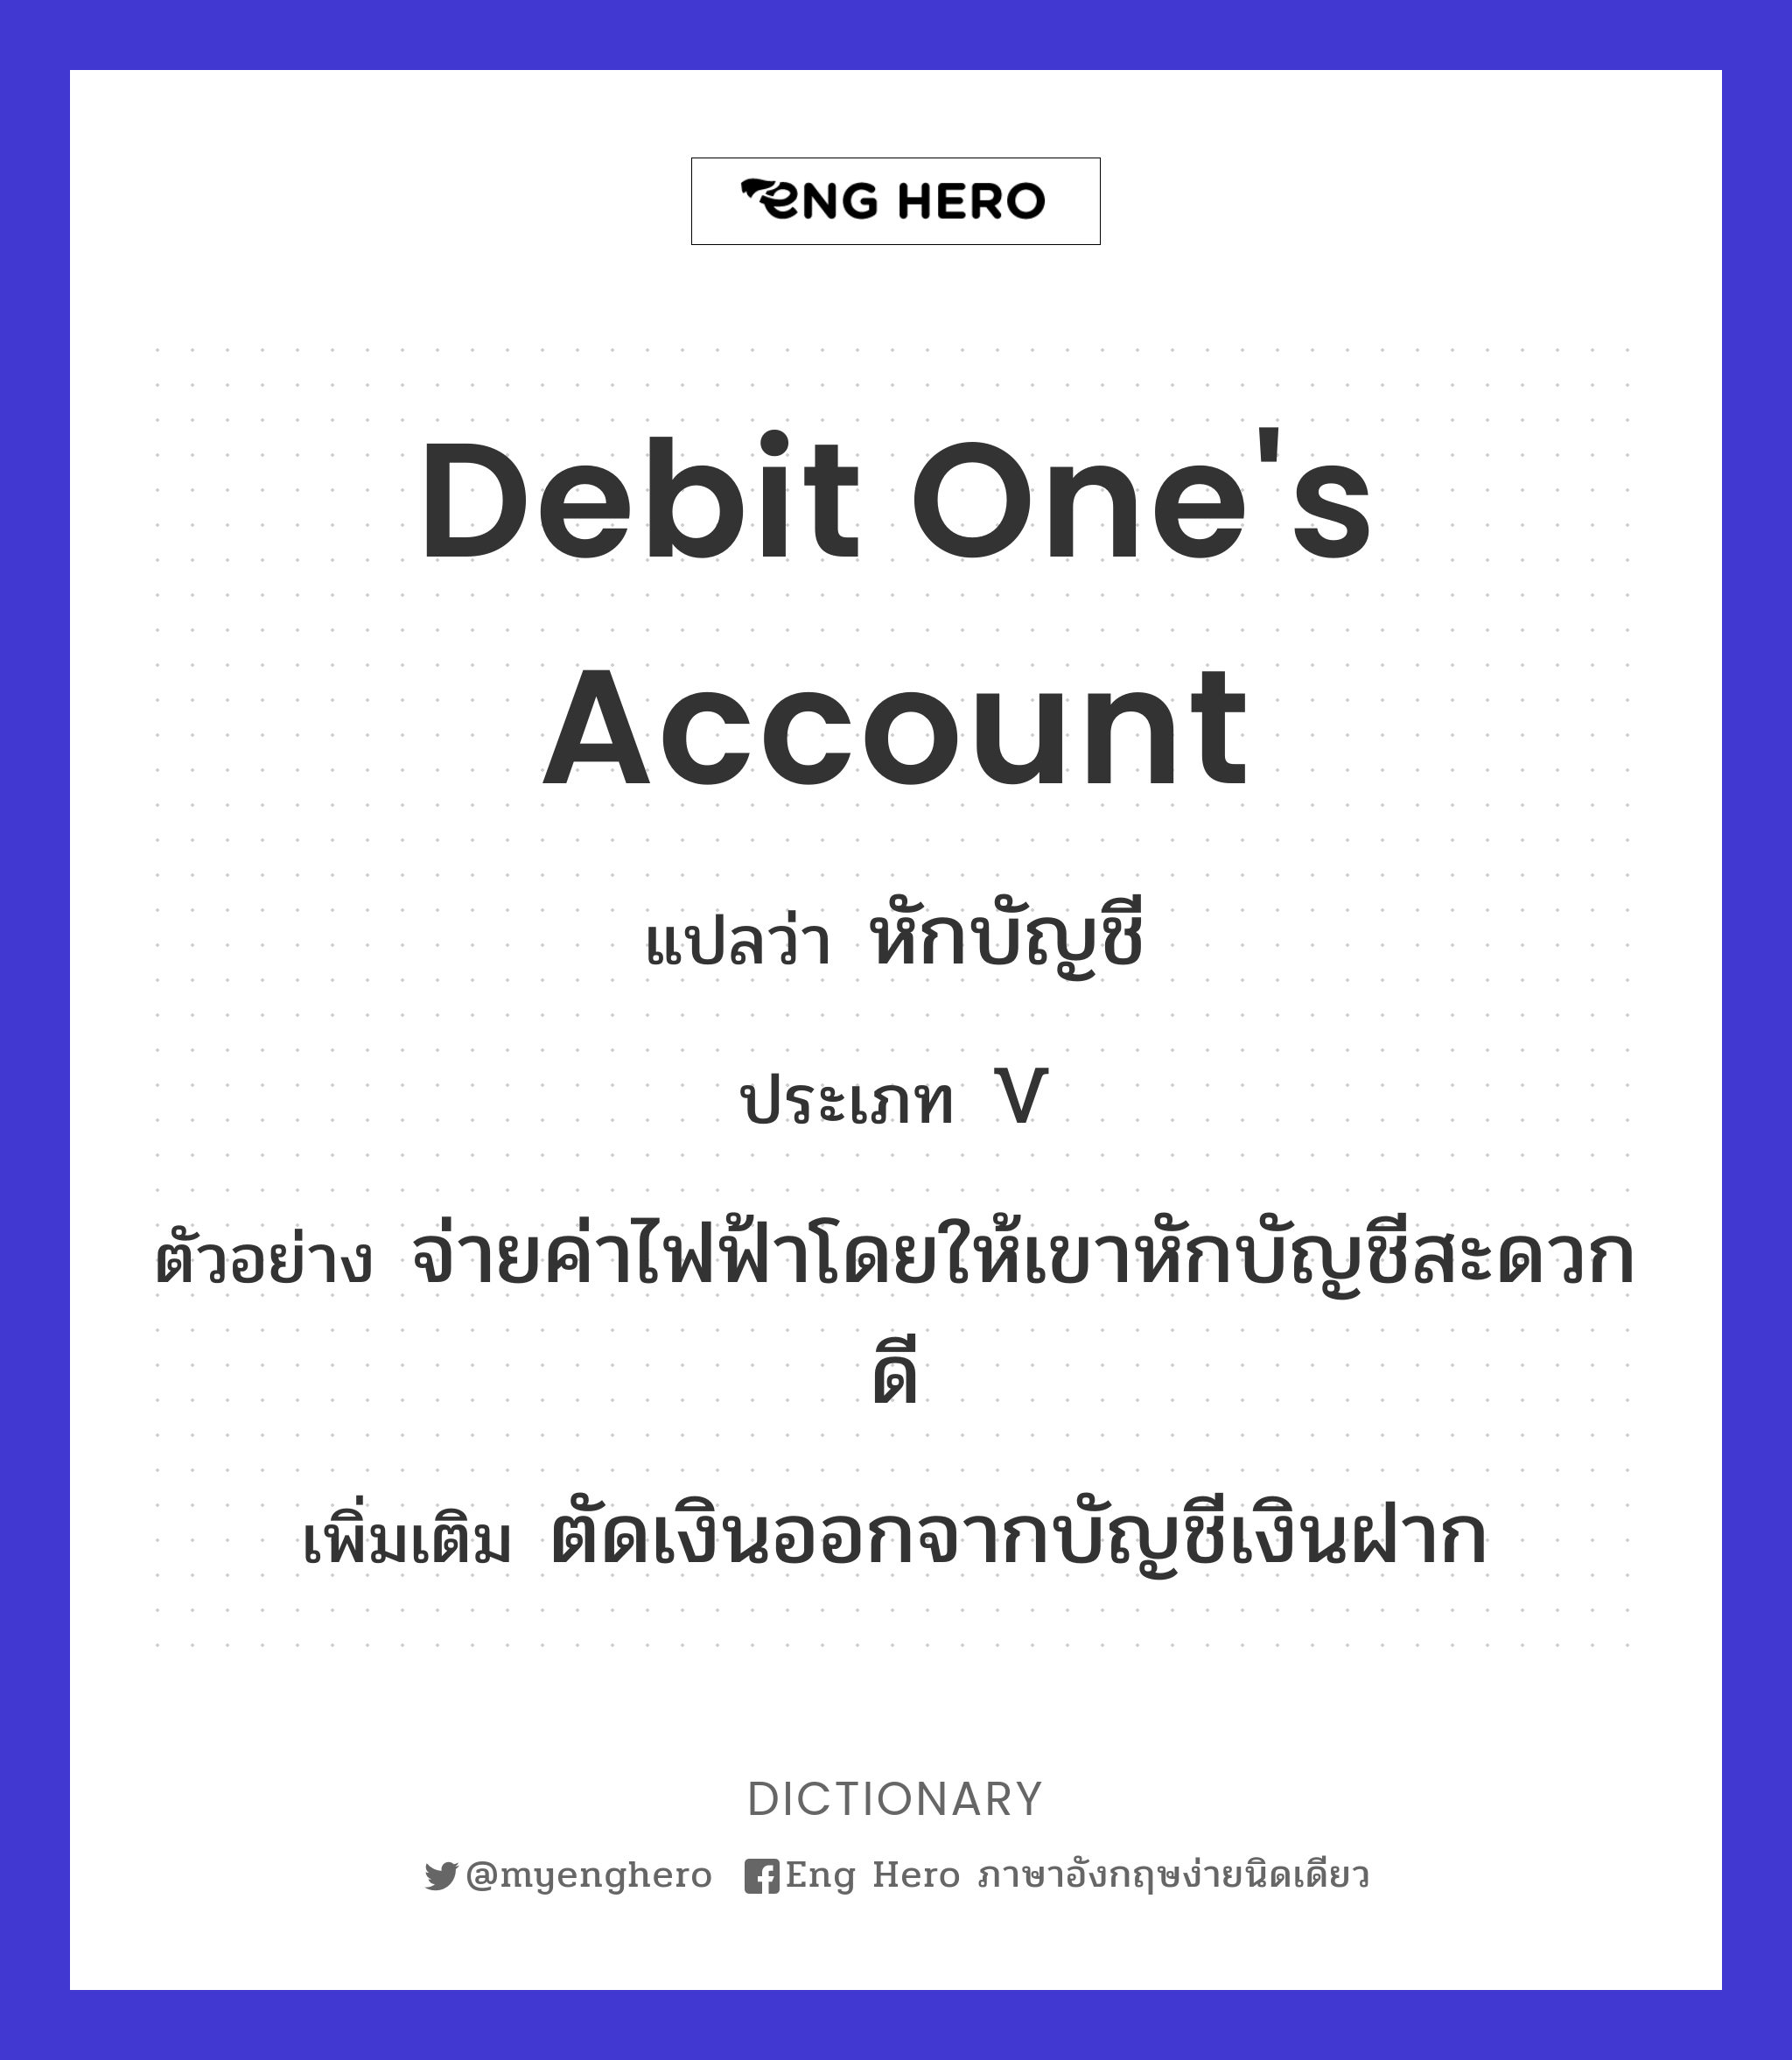 debit one's account